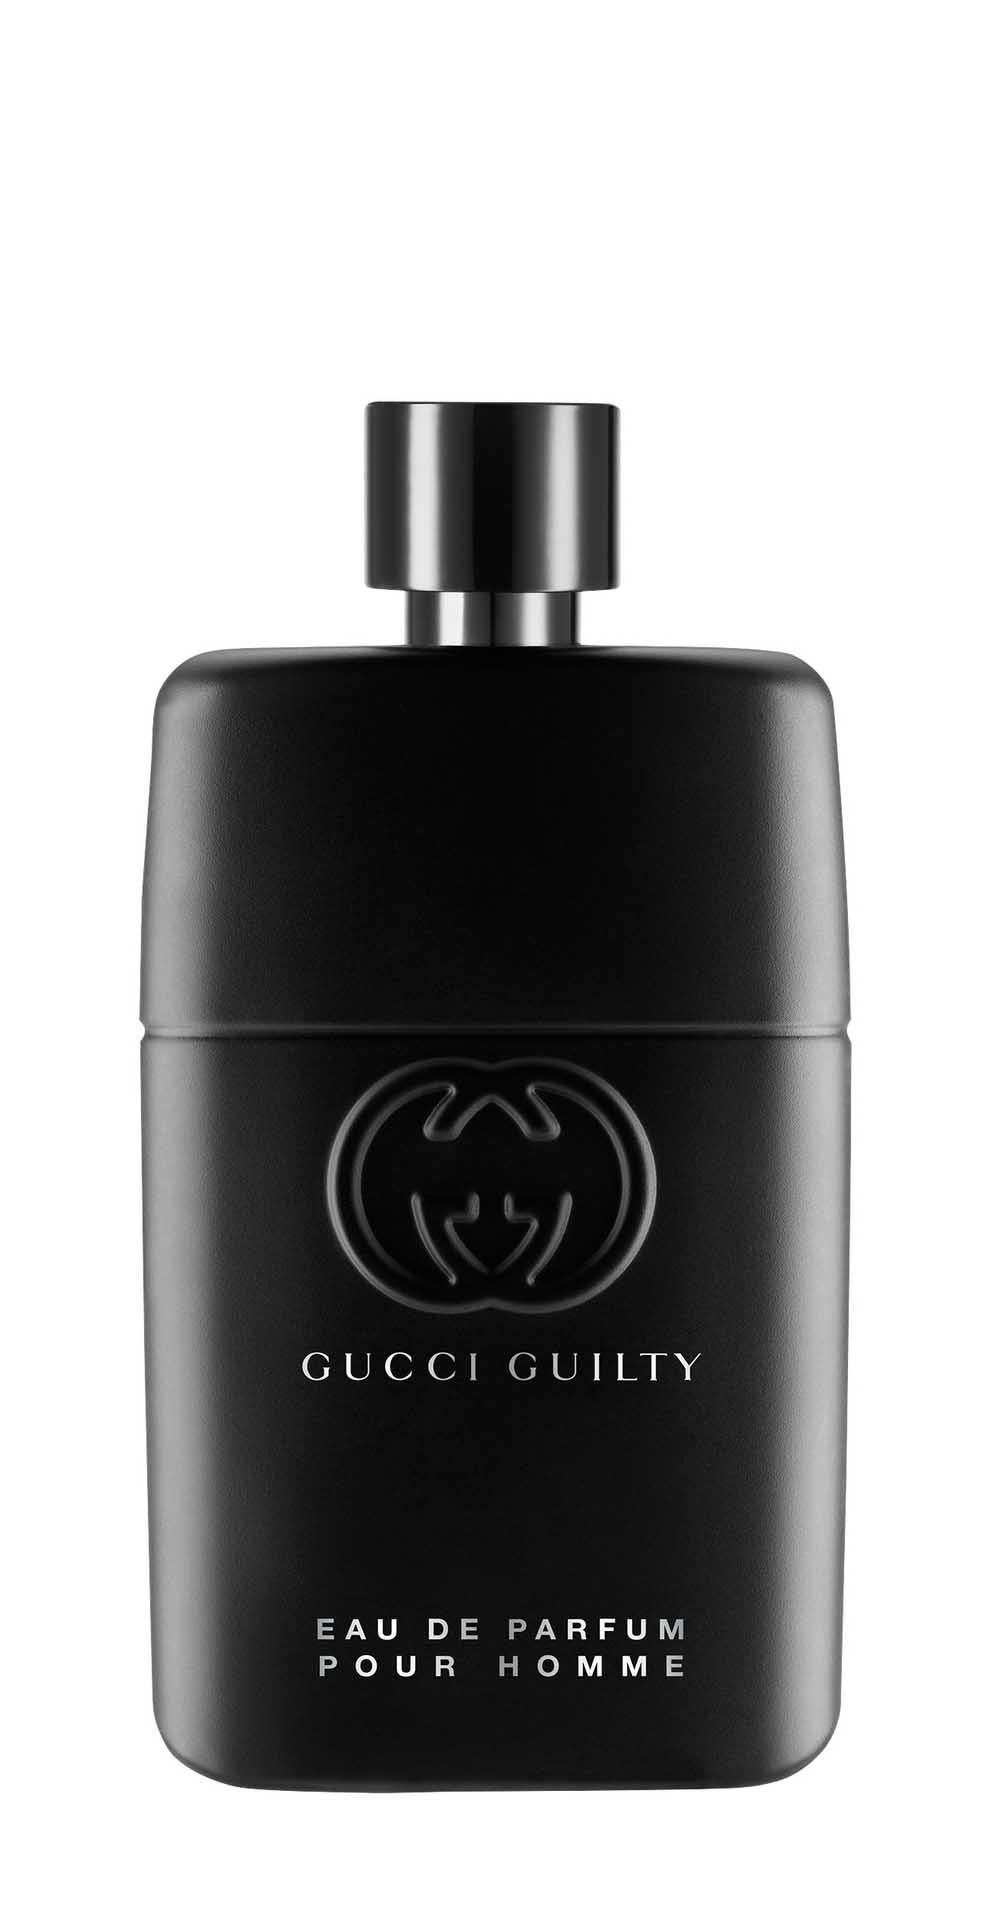 Парфюмерная вода Gucci Guilty Pour Homme Eau de Parfum для мужчин, 90 мл gucci eau de parfum ii 75